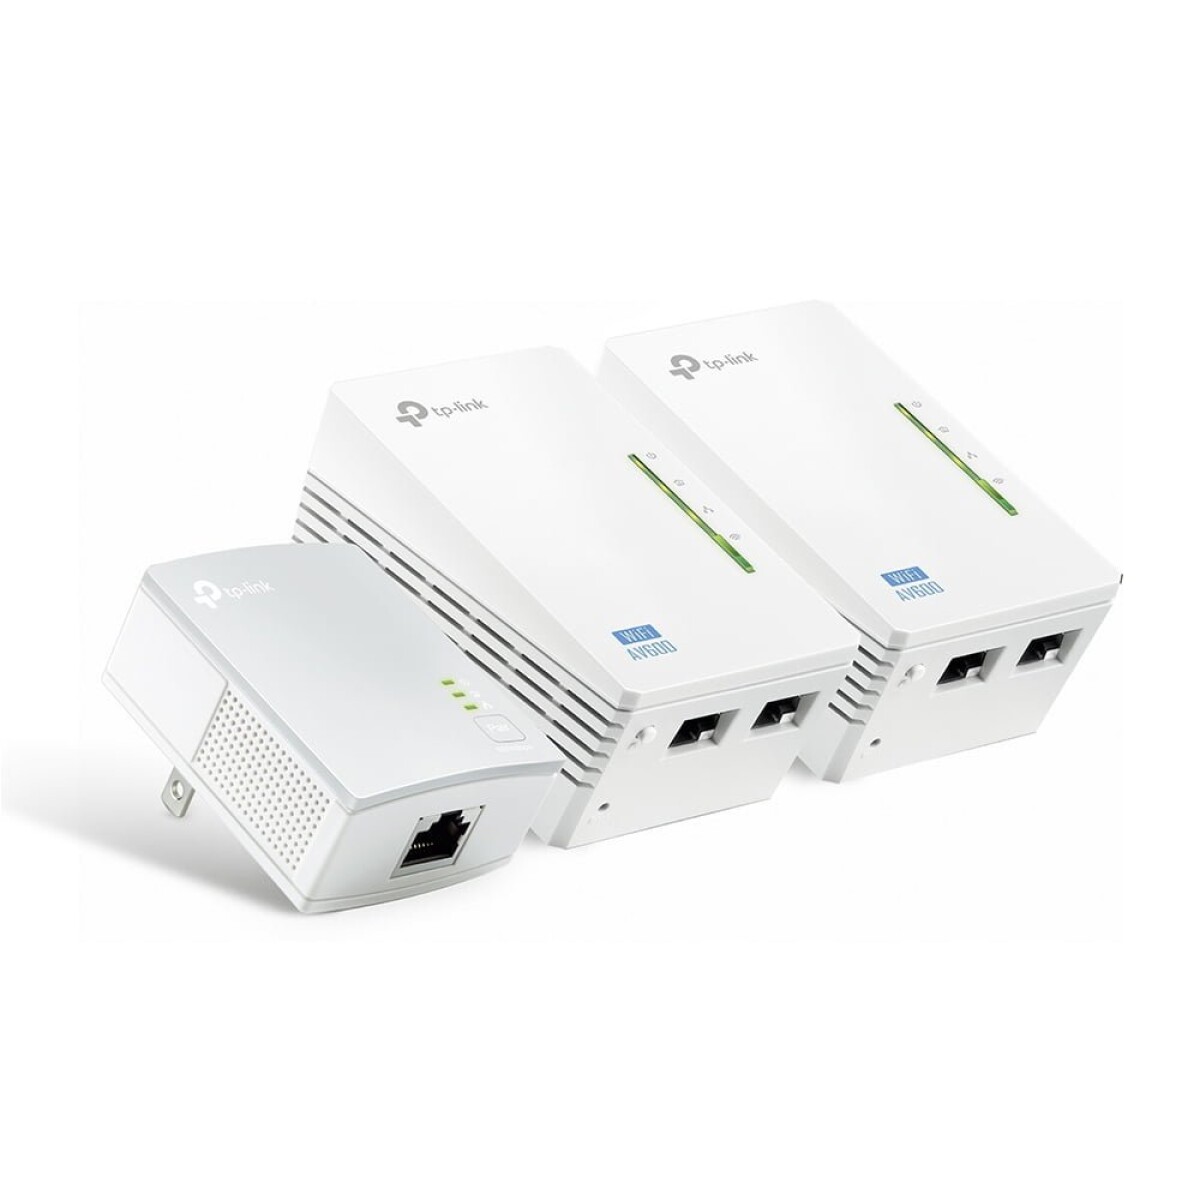 Pack x3 Extensor de Alcance Wi-Fi TP-Link PowerLine TL-WPA4220 KIT - Blanco 